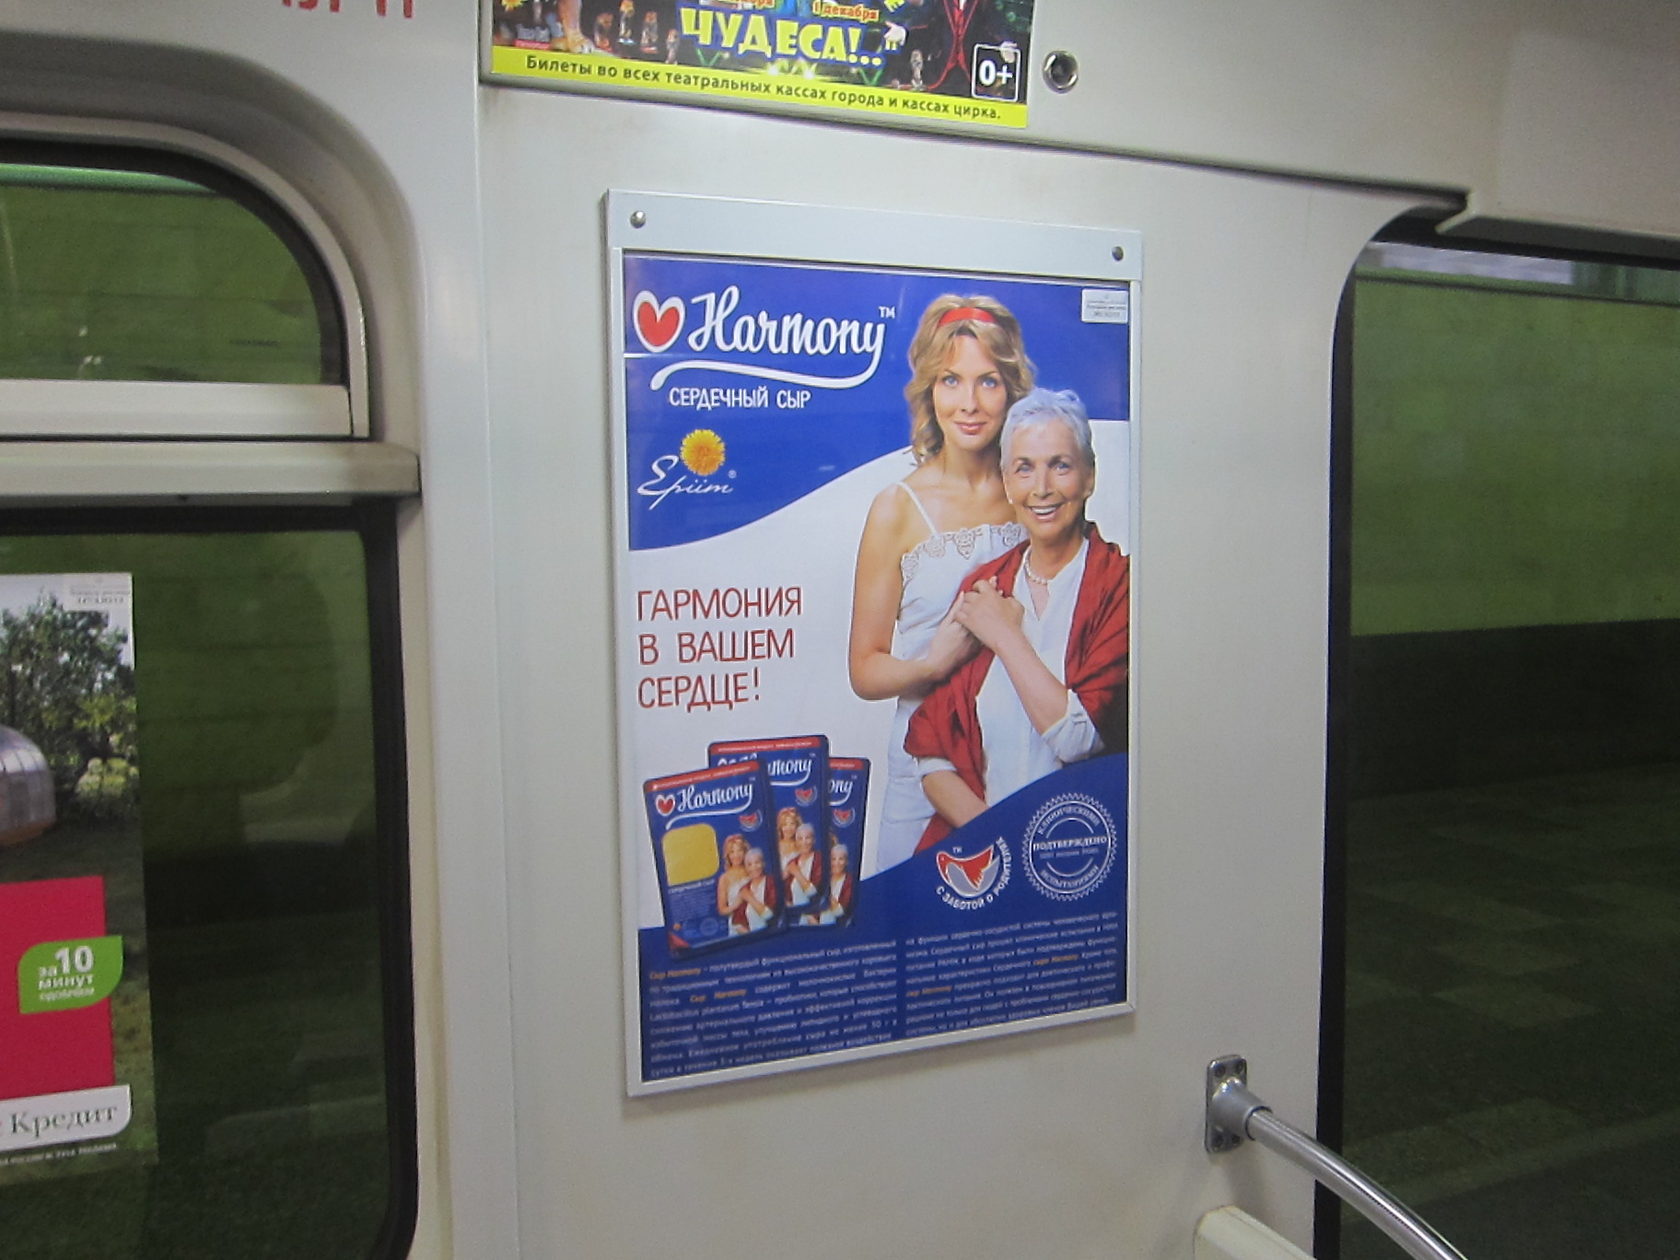 Плакаты в метро. Реклама в метро. Рекламные плакаты в метро. Рекламные постеры в метро. Реклама в метро СПБ.